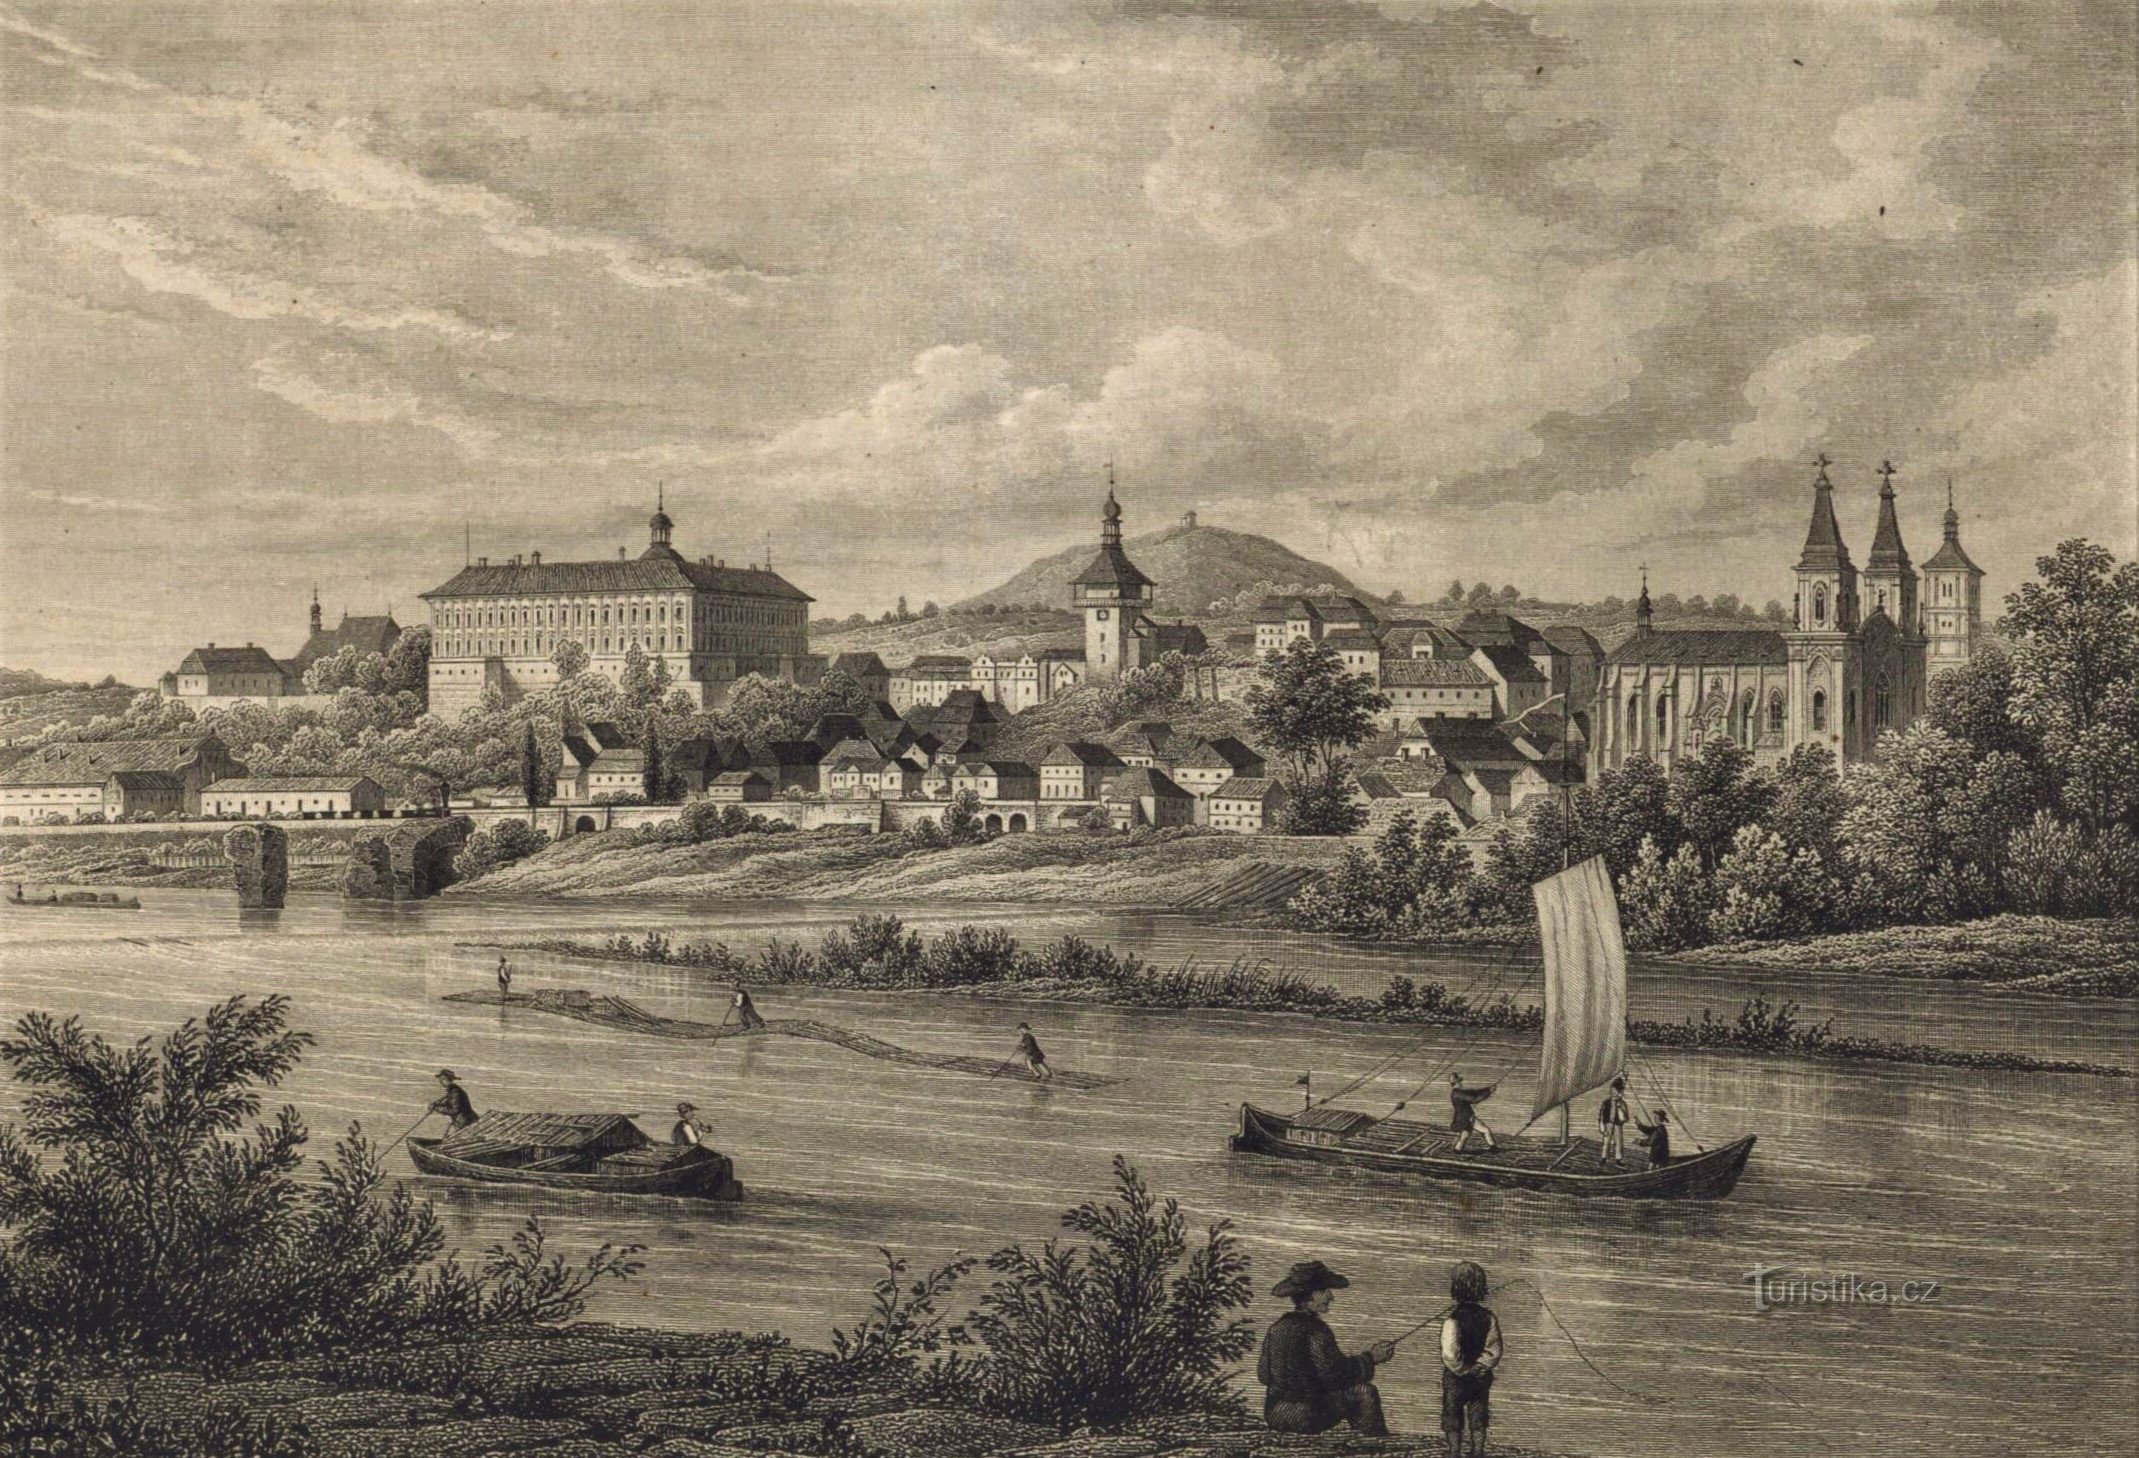 Ansicht von Roudnice nad Labem nach 1850 (die Brauerei befindet sich unter der Burg ganz links)